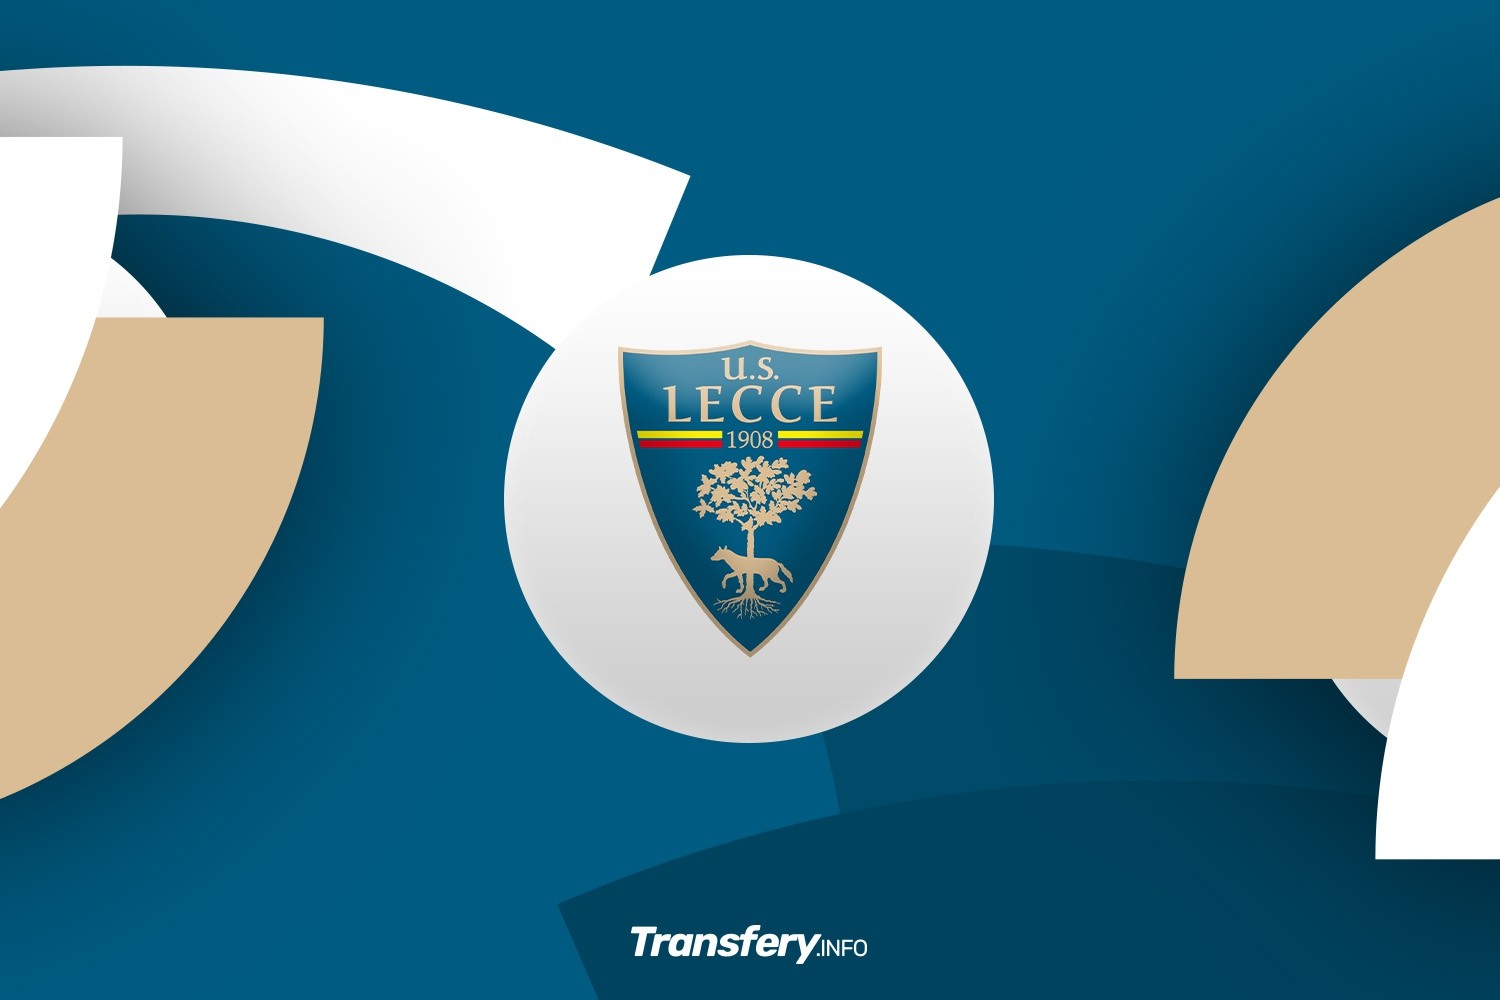 OFICJALNIE: US Lecce anulowało duży transfer